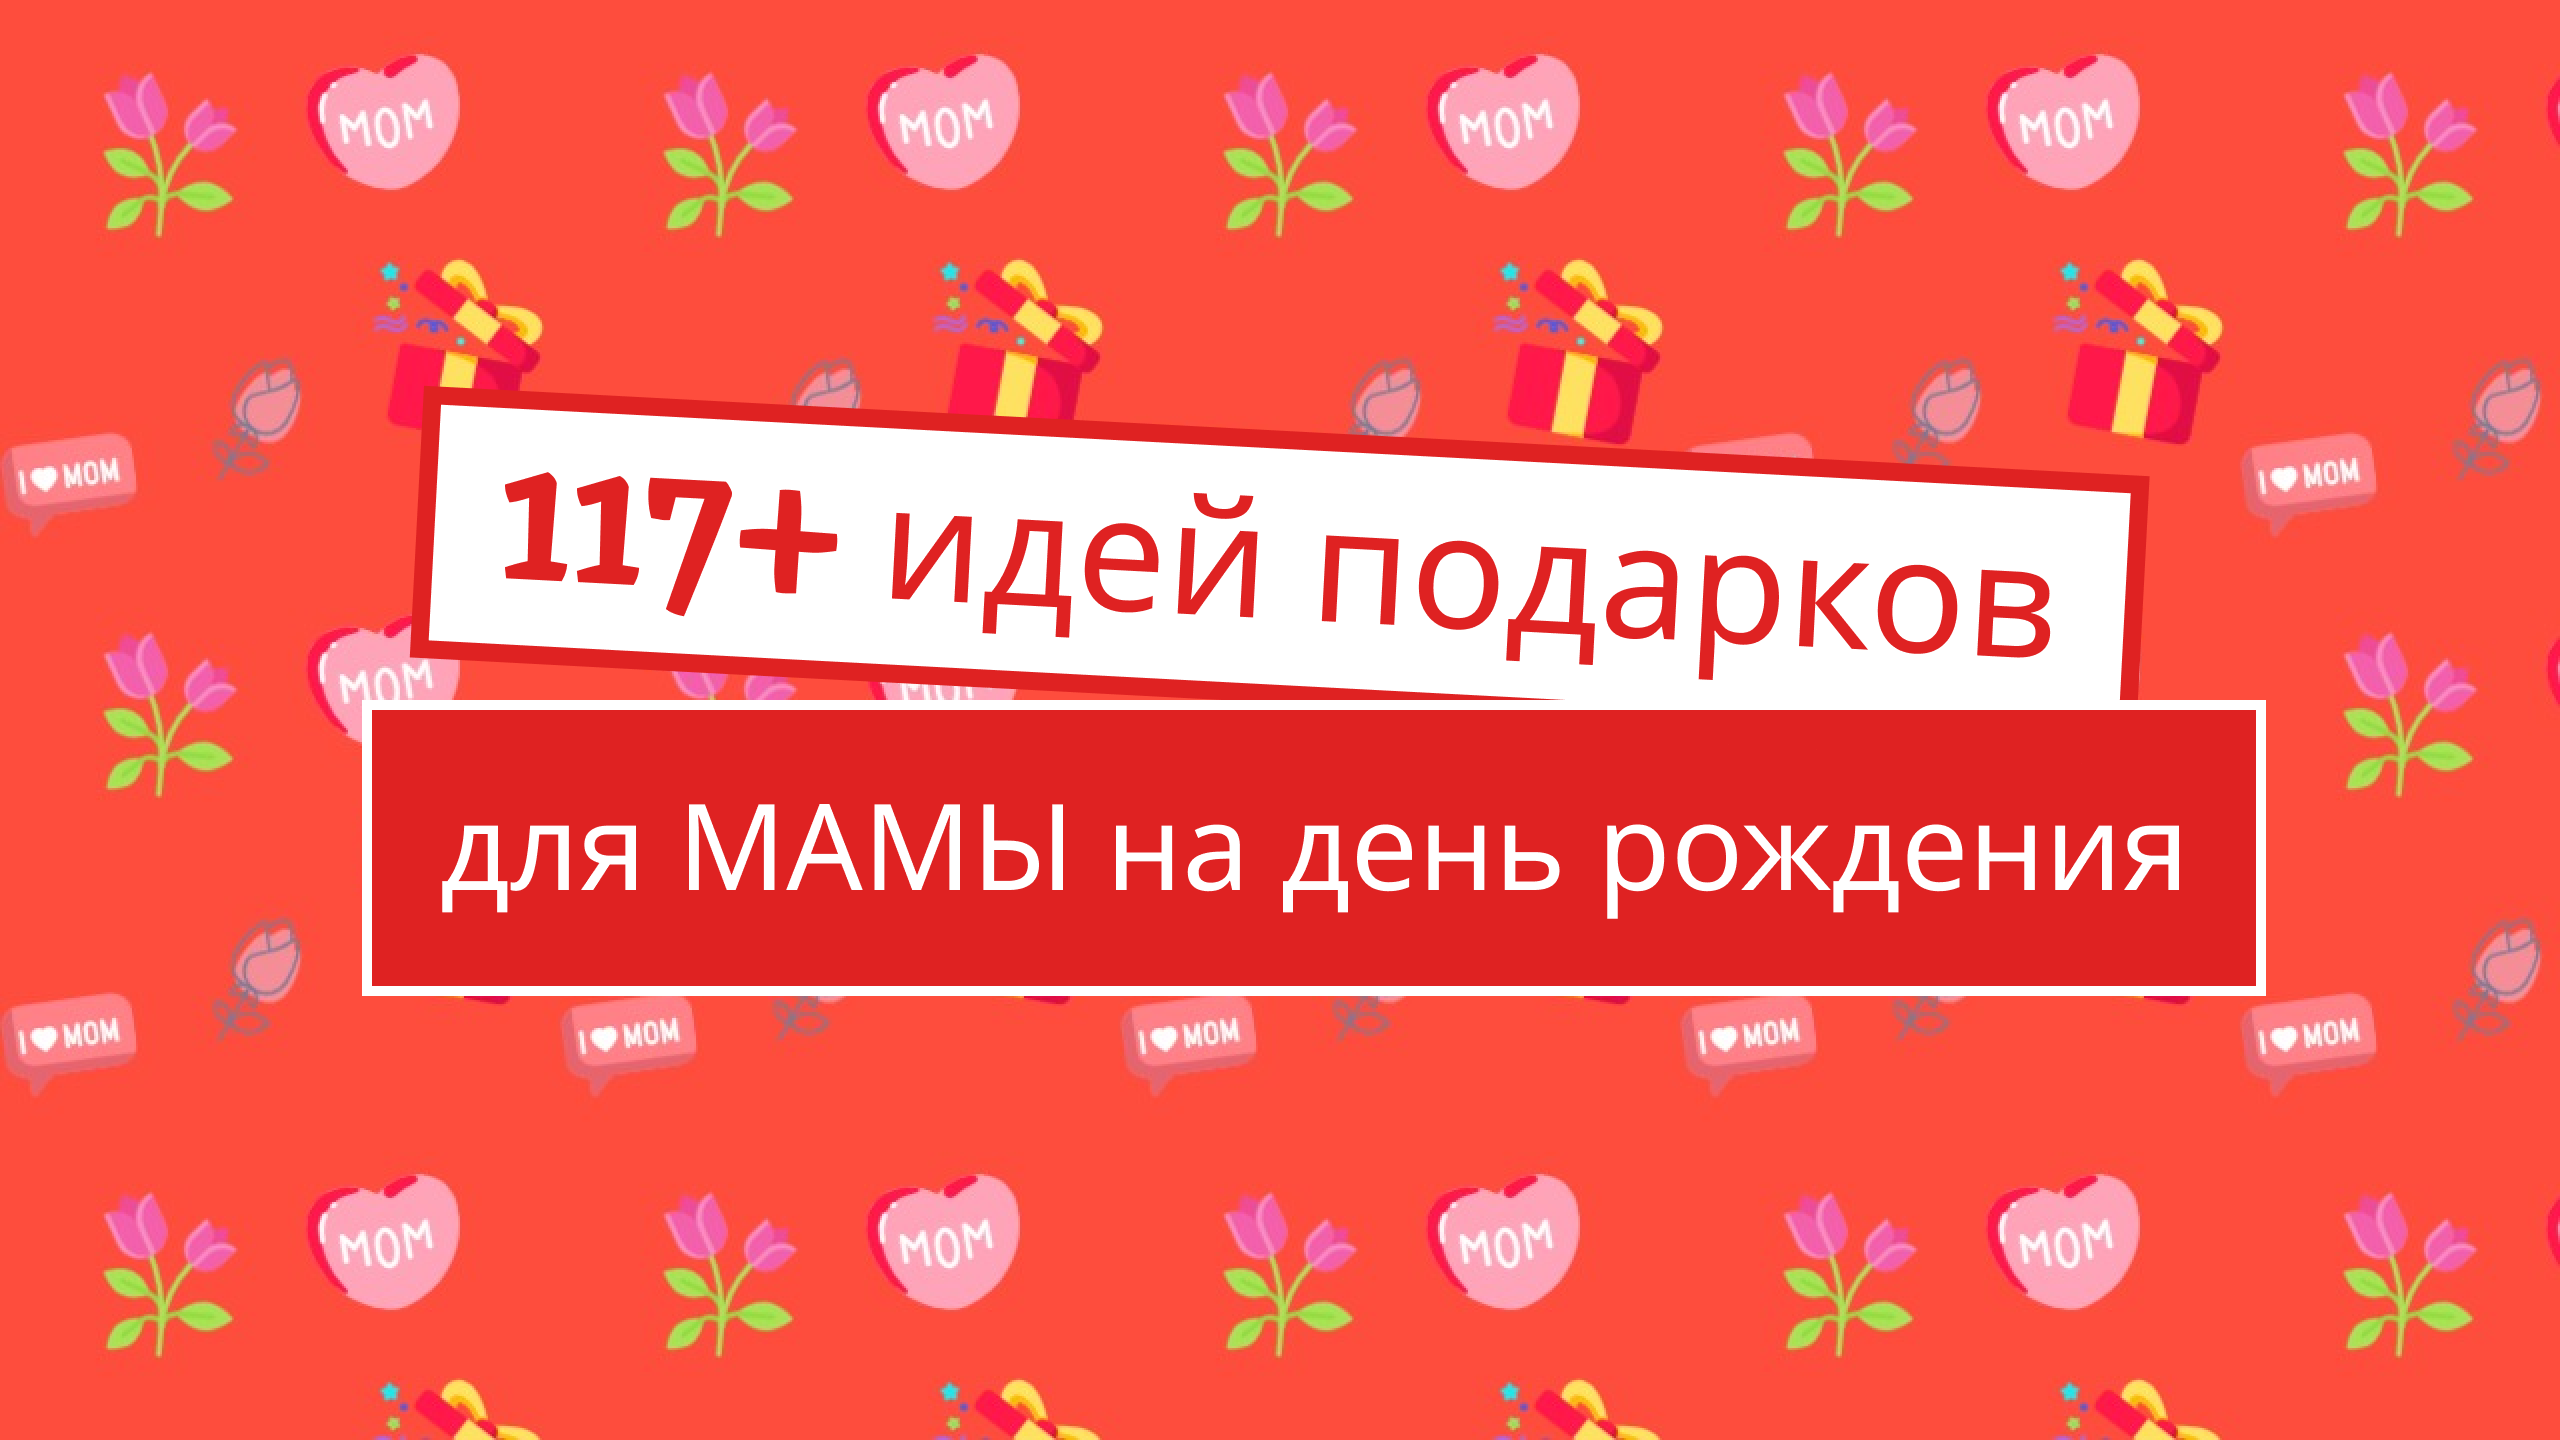 117 идей подарков для мамы на день рождения